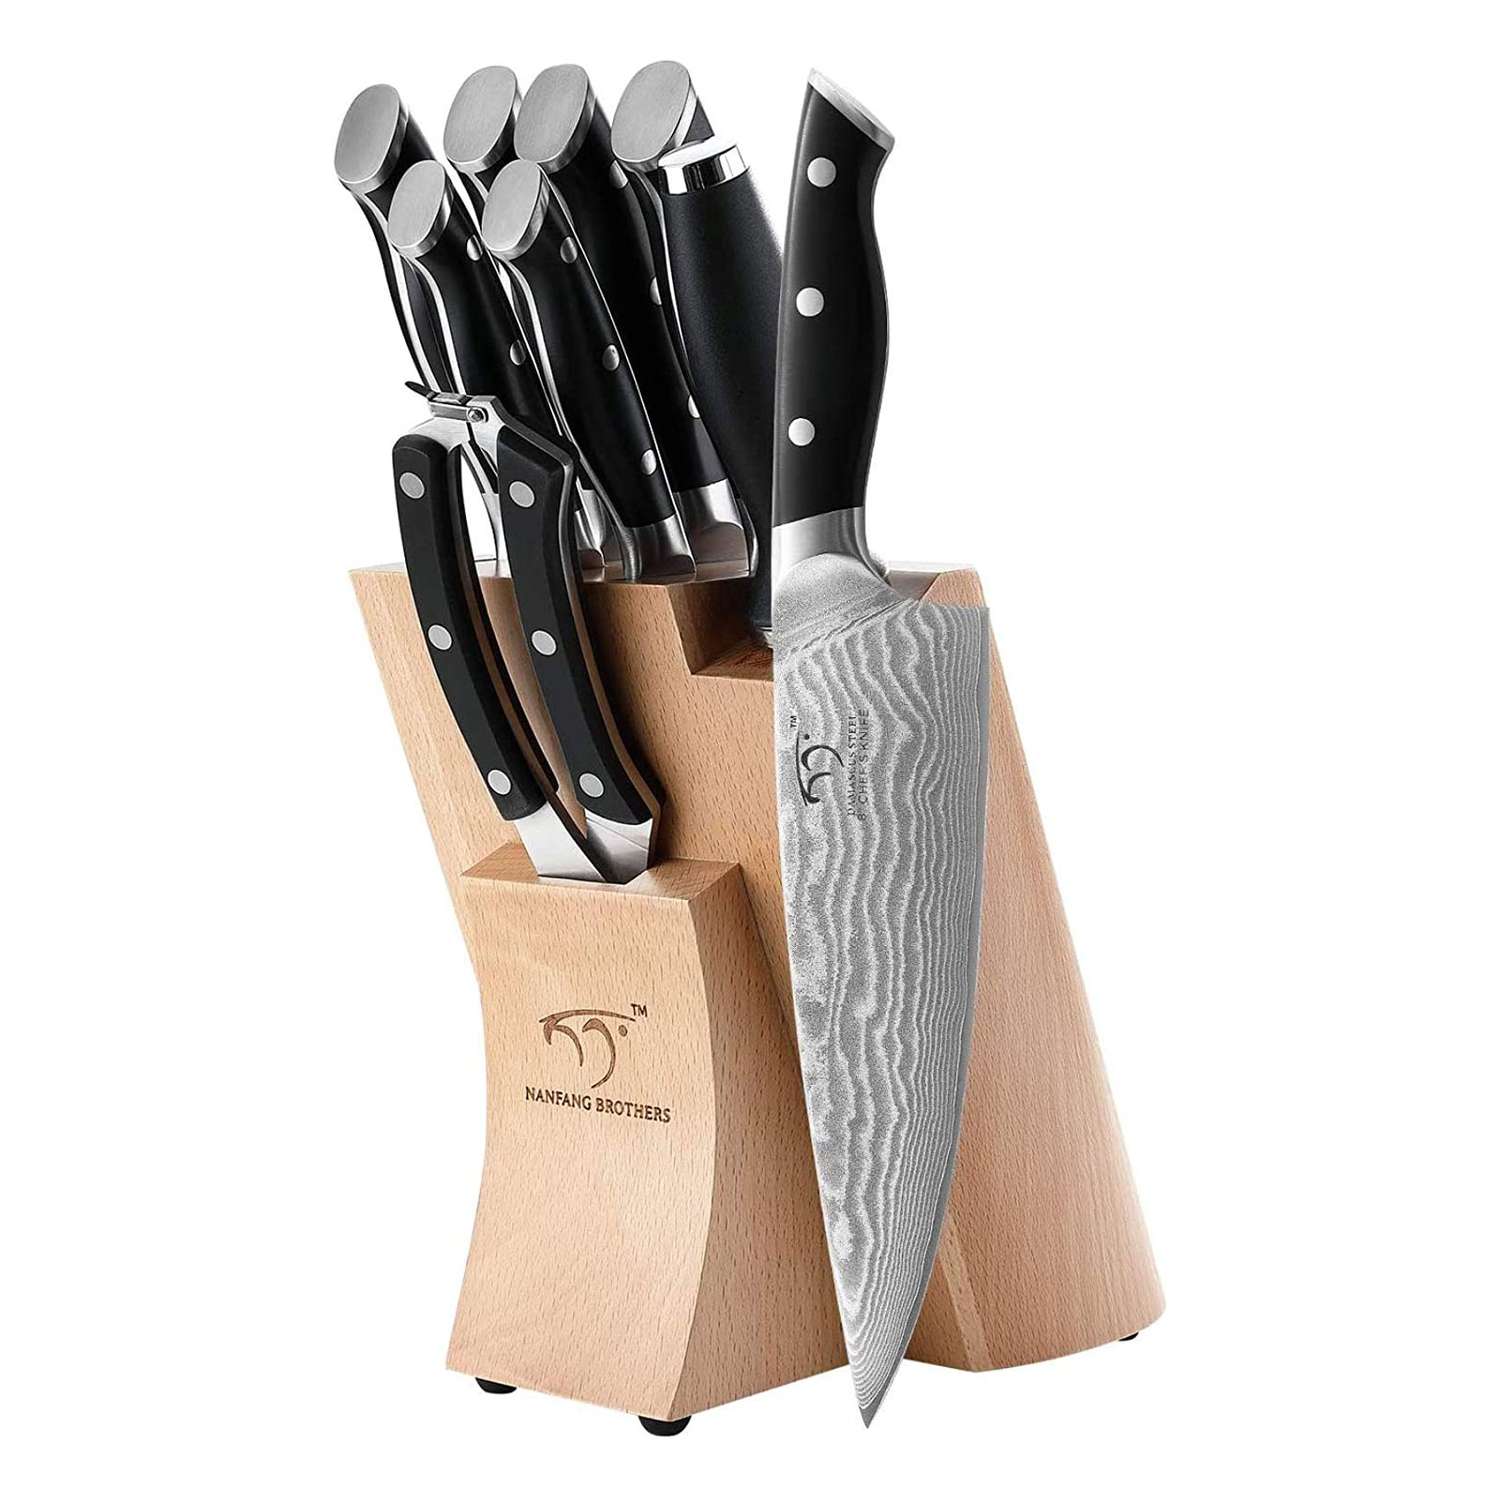 Best Knives Sets